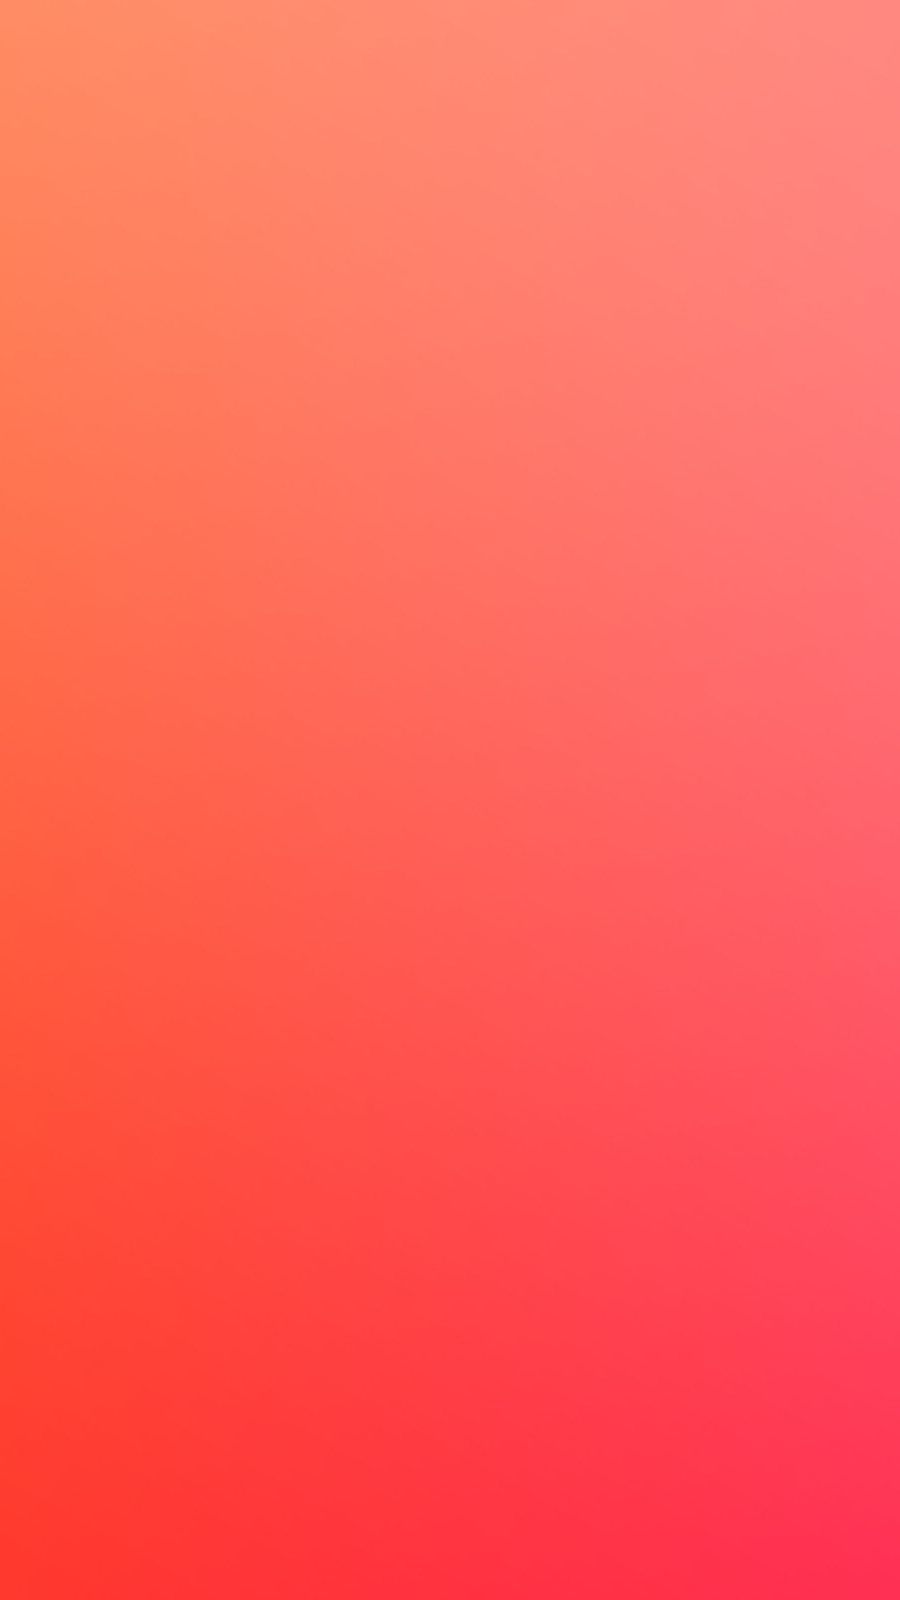 Hình nền điện thoại pha trộn màu cam: Bạn đang tìm kiếm một hình nền mới và sáng tạo cho điện thoại của mình? Hãy xem qua hình nền điện thoại pha trộn màu cam này! Với sự kết hợp độc đáo giữa cam và hồng, hình nền sẽ làm nổi bật màn hình của bạn và cho thấy sự cá tính và phong cách của riêng mình.